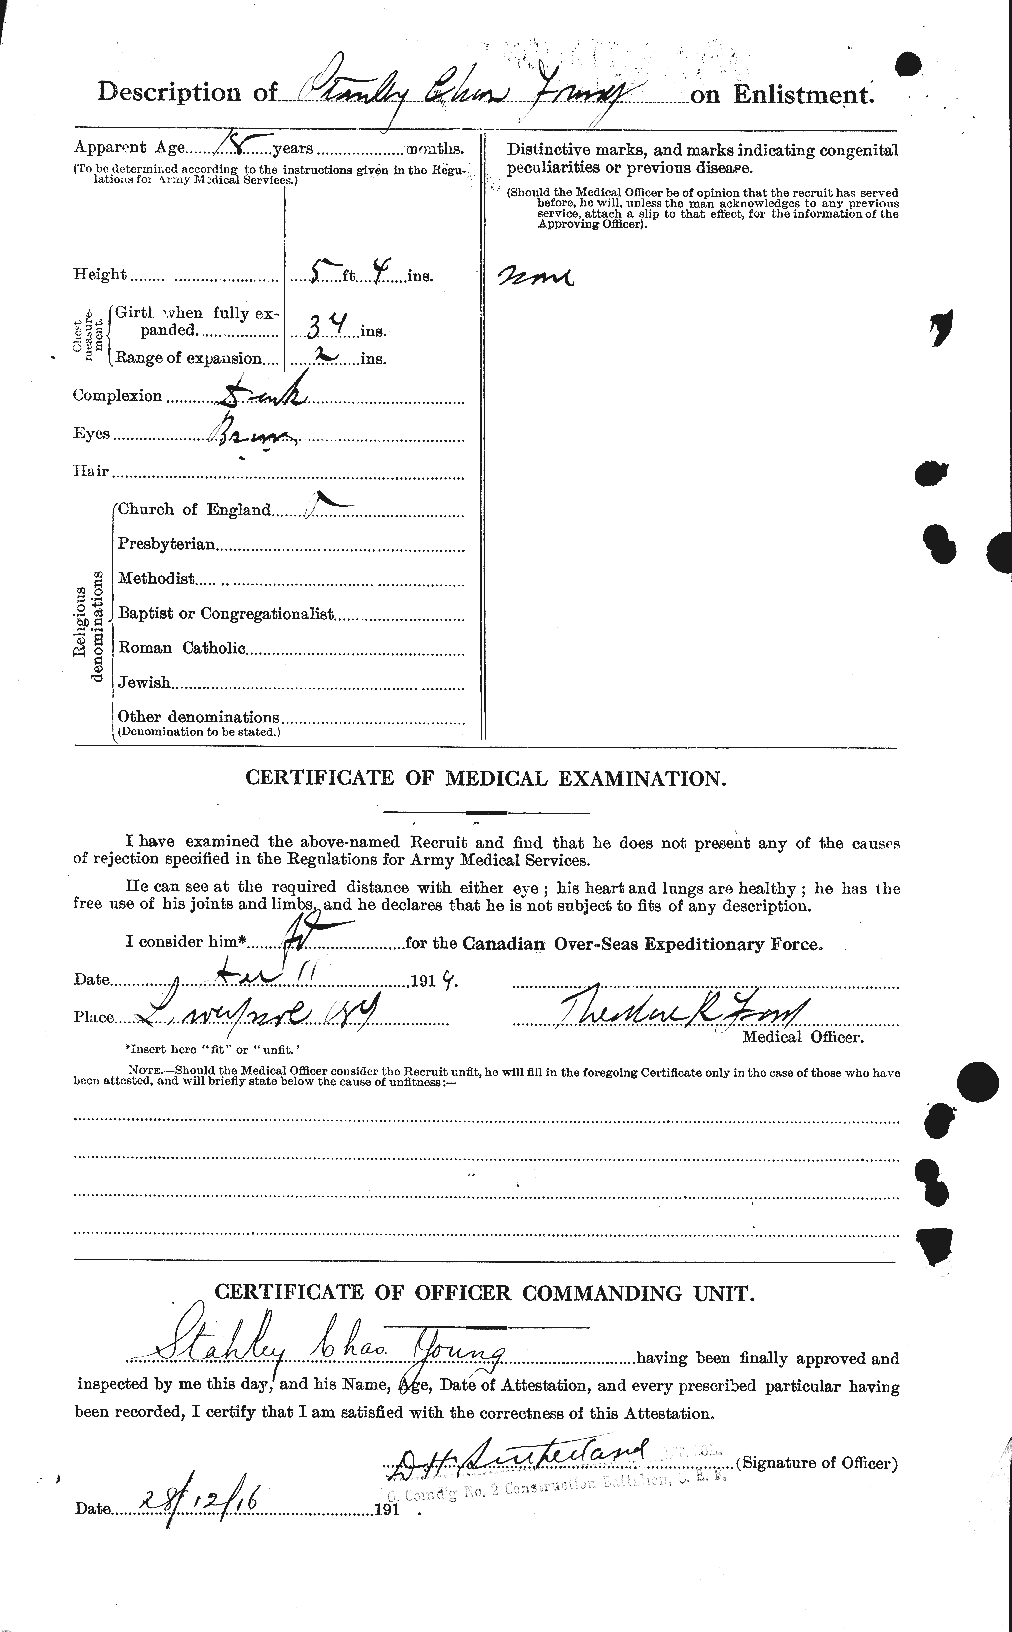 Dossiers du Personnel de la Première Guerre mondiale - CEC 692303b